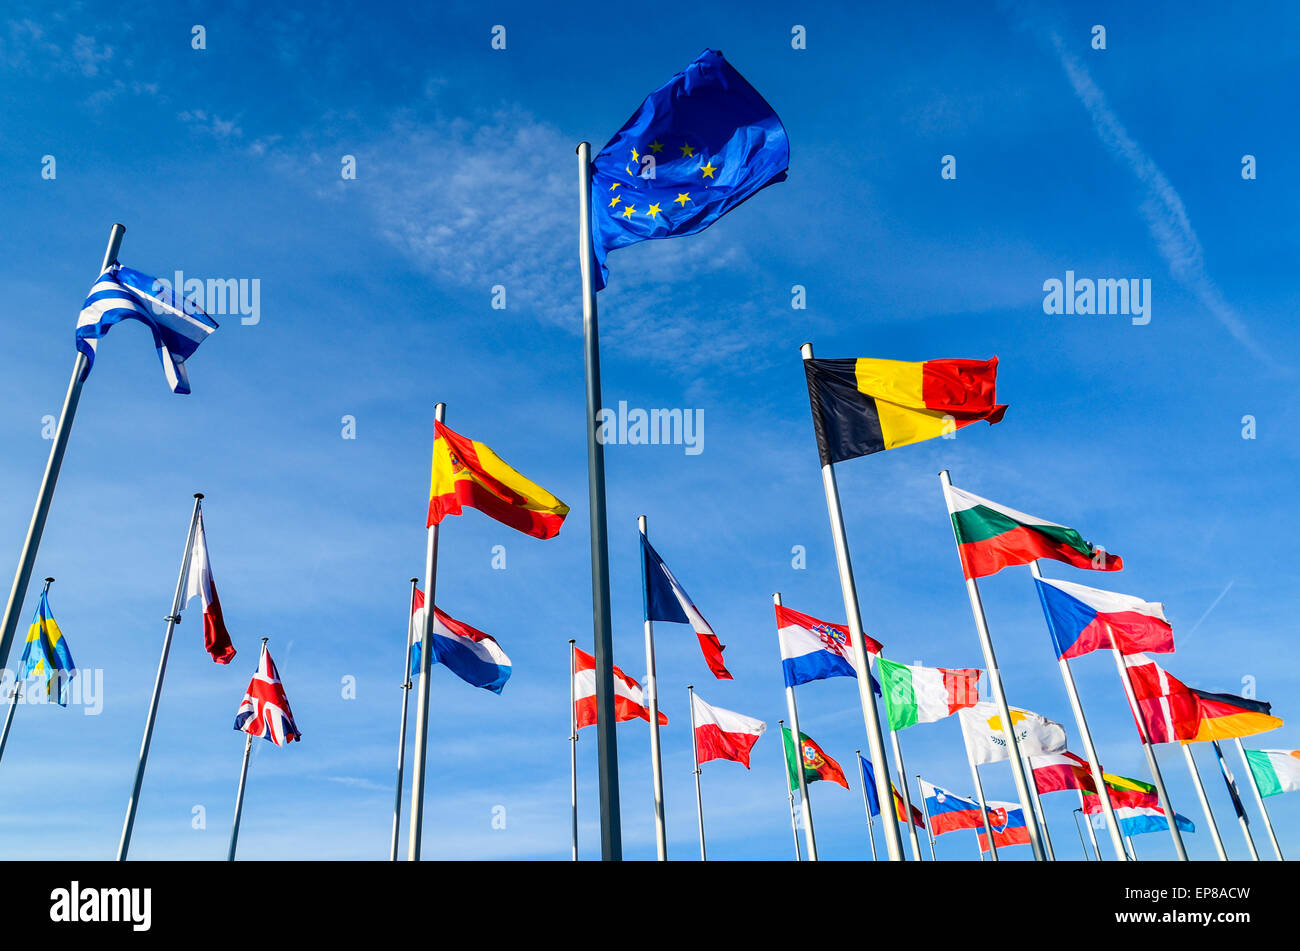 Drapeau de l'Union européenne et les drapeaux des pays de l'Union européenne à la Commission européenne, Quartier Européen, le Luxembourg Banque D'Images